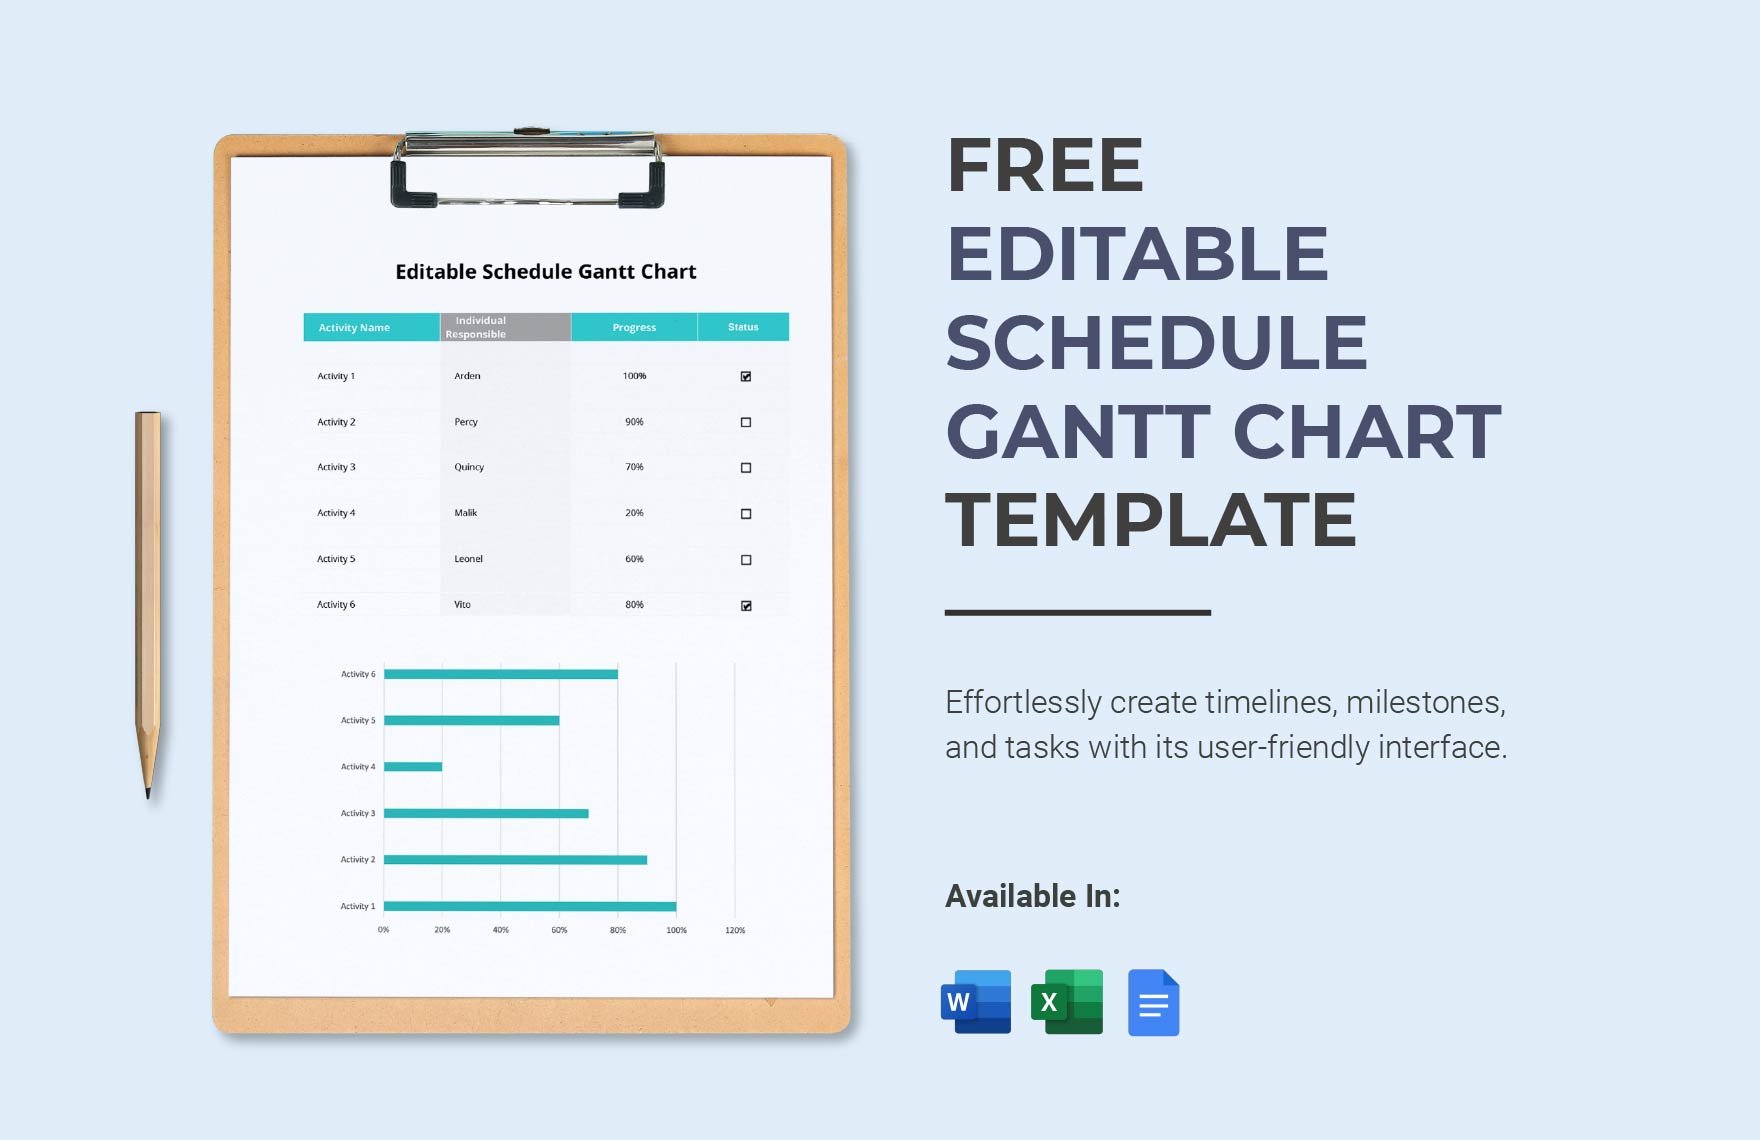 Editable Schedule Gantt Chart Template